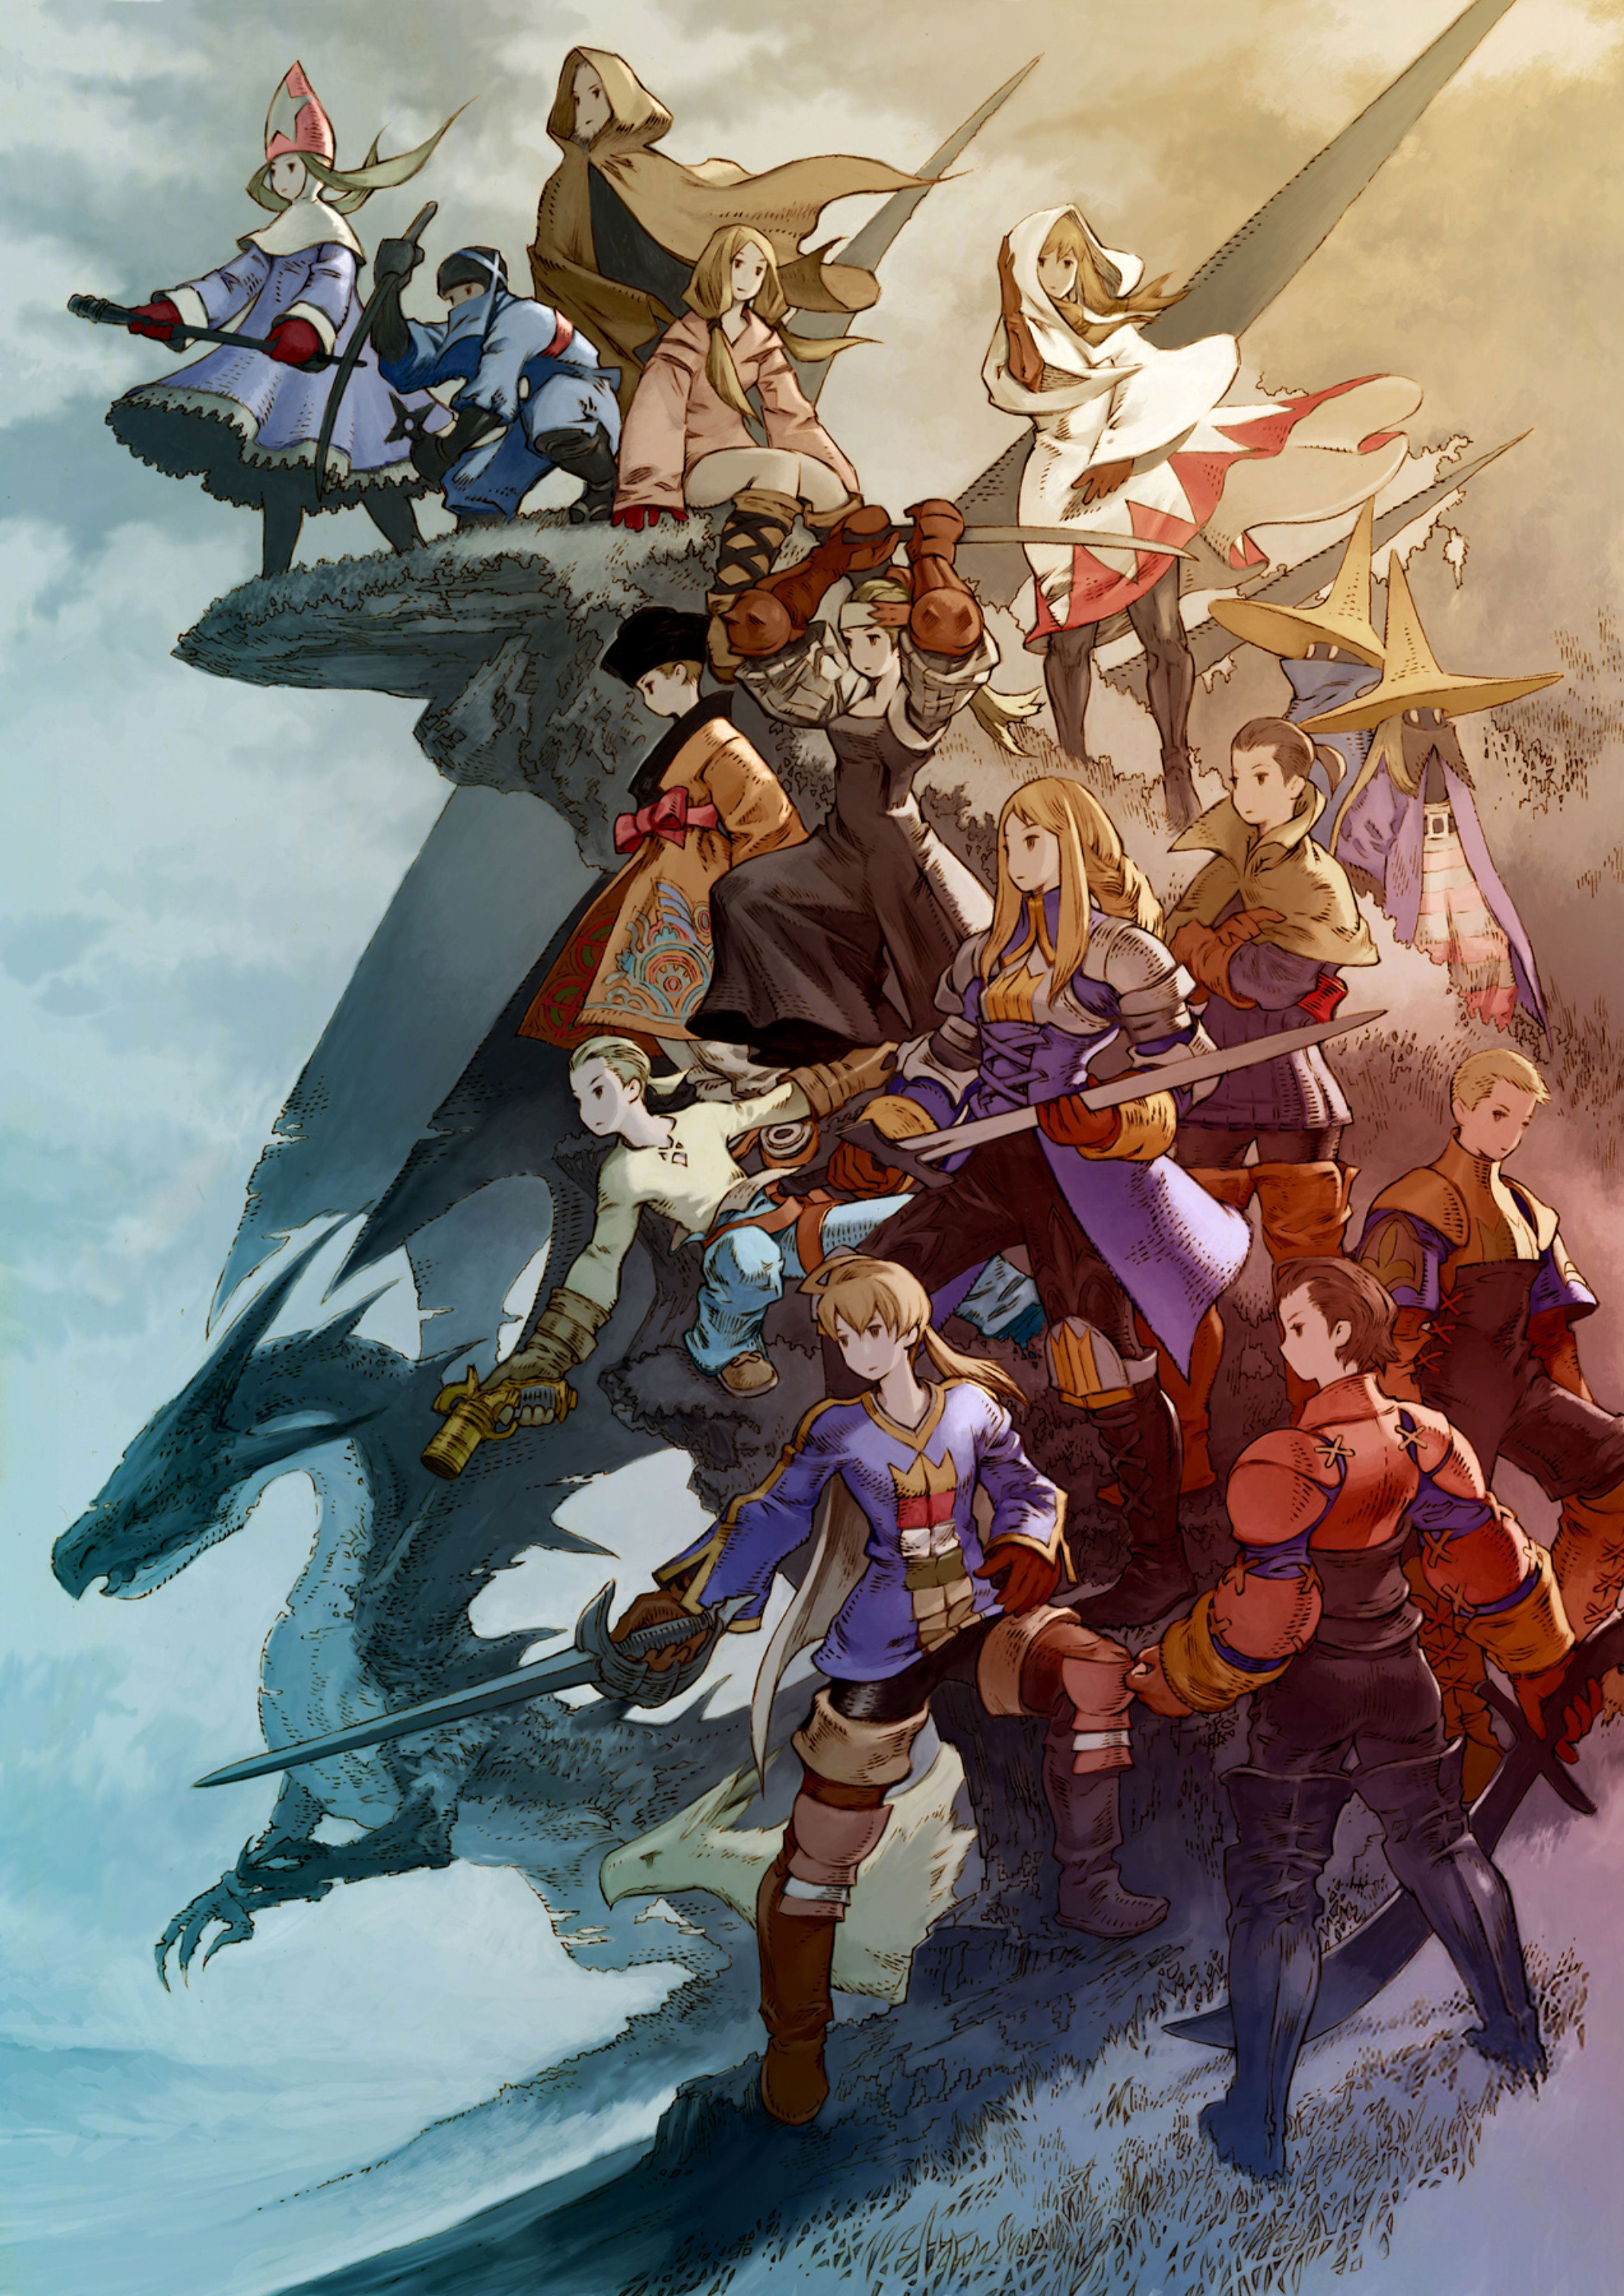 Final Fantasy Tactics wallpaper, Video Game, HQ Final Fantasy Tactics pictureK Wallpaper 2019